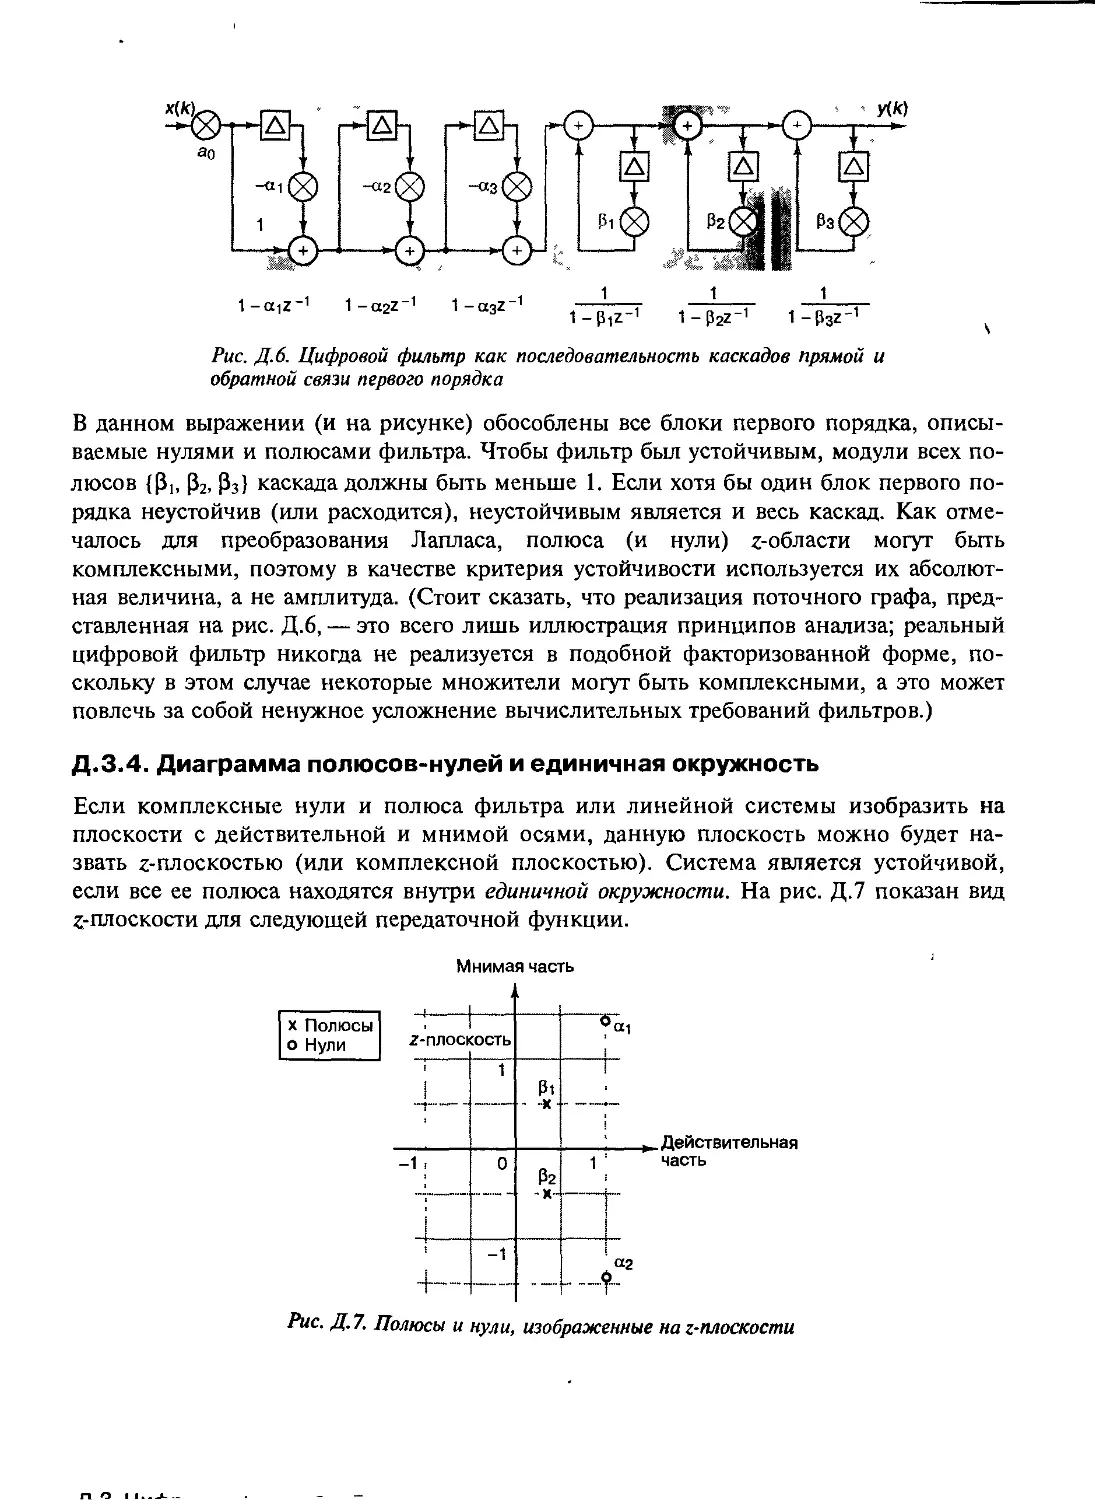 Д.3.4. Диаграмма полюсов-нулей и единичная окружность